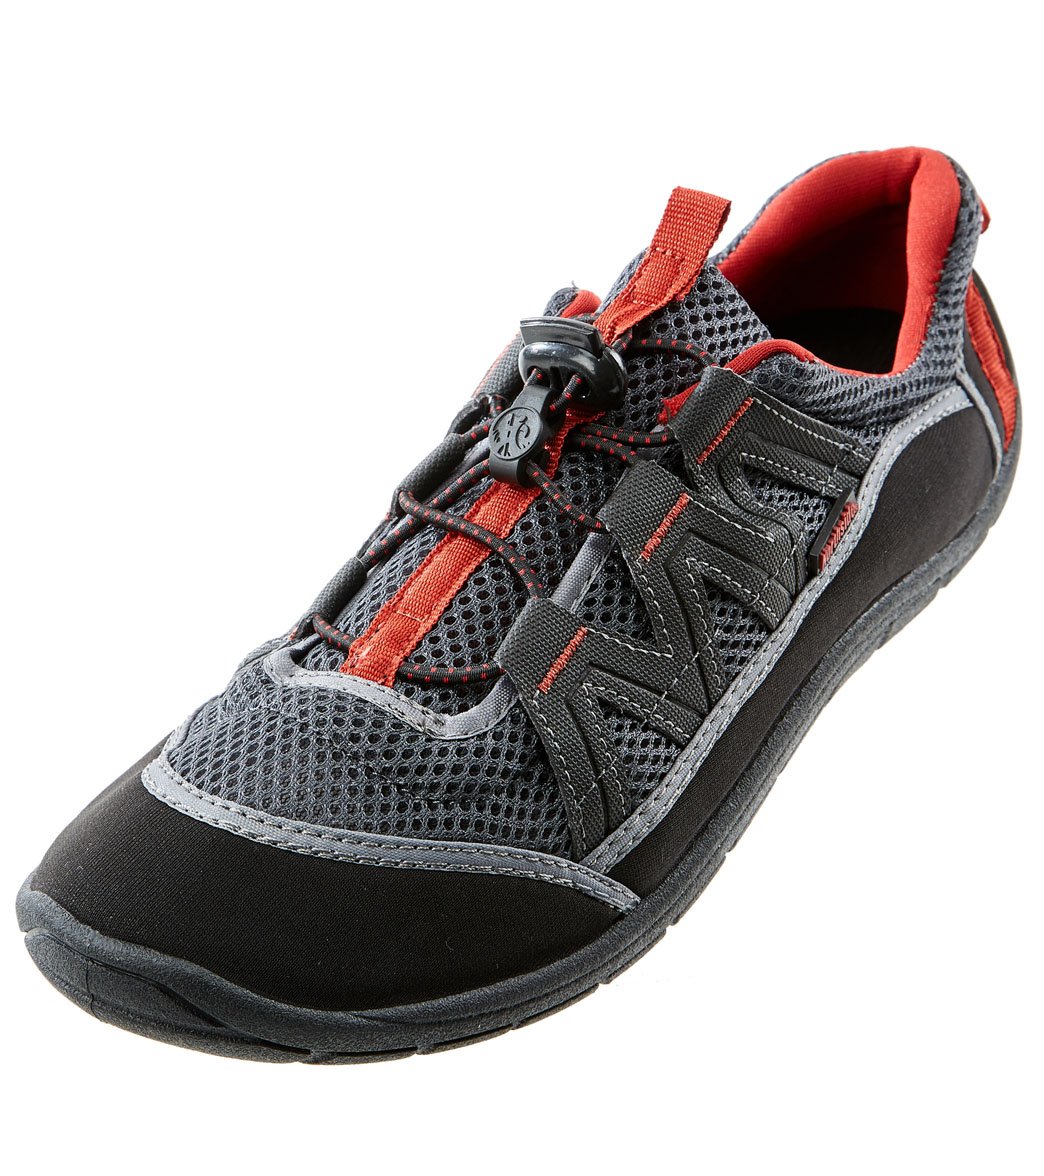 Northside Men's Brille Ii Water Shoes - Dark Grey/Red 8 - Swimoutlet.com